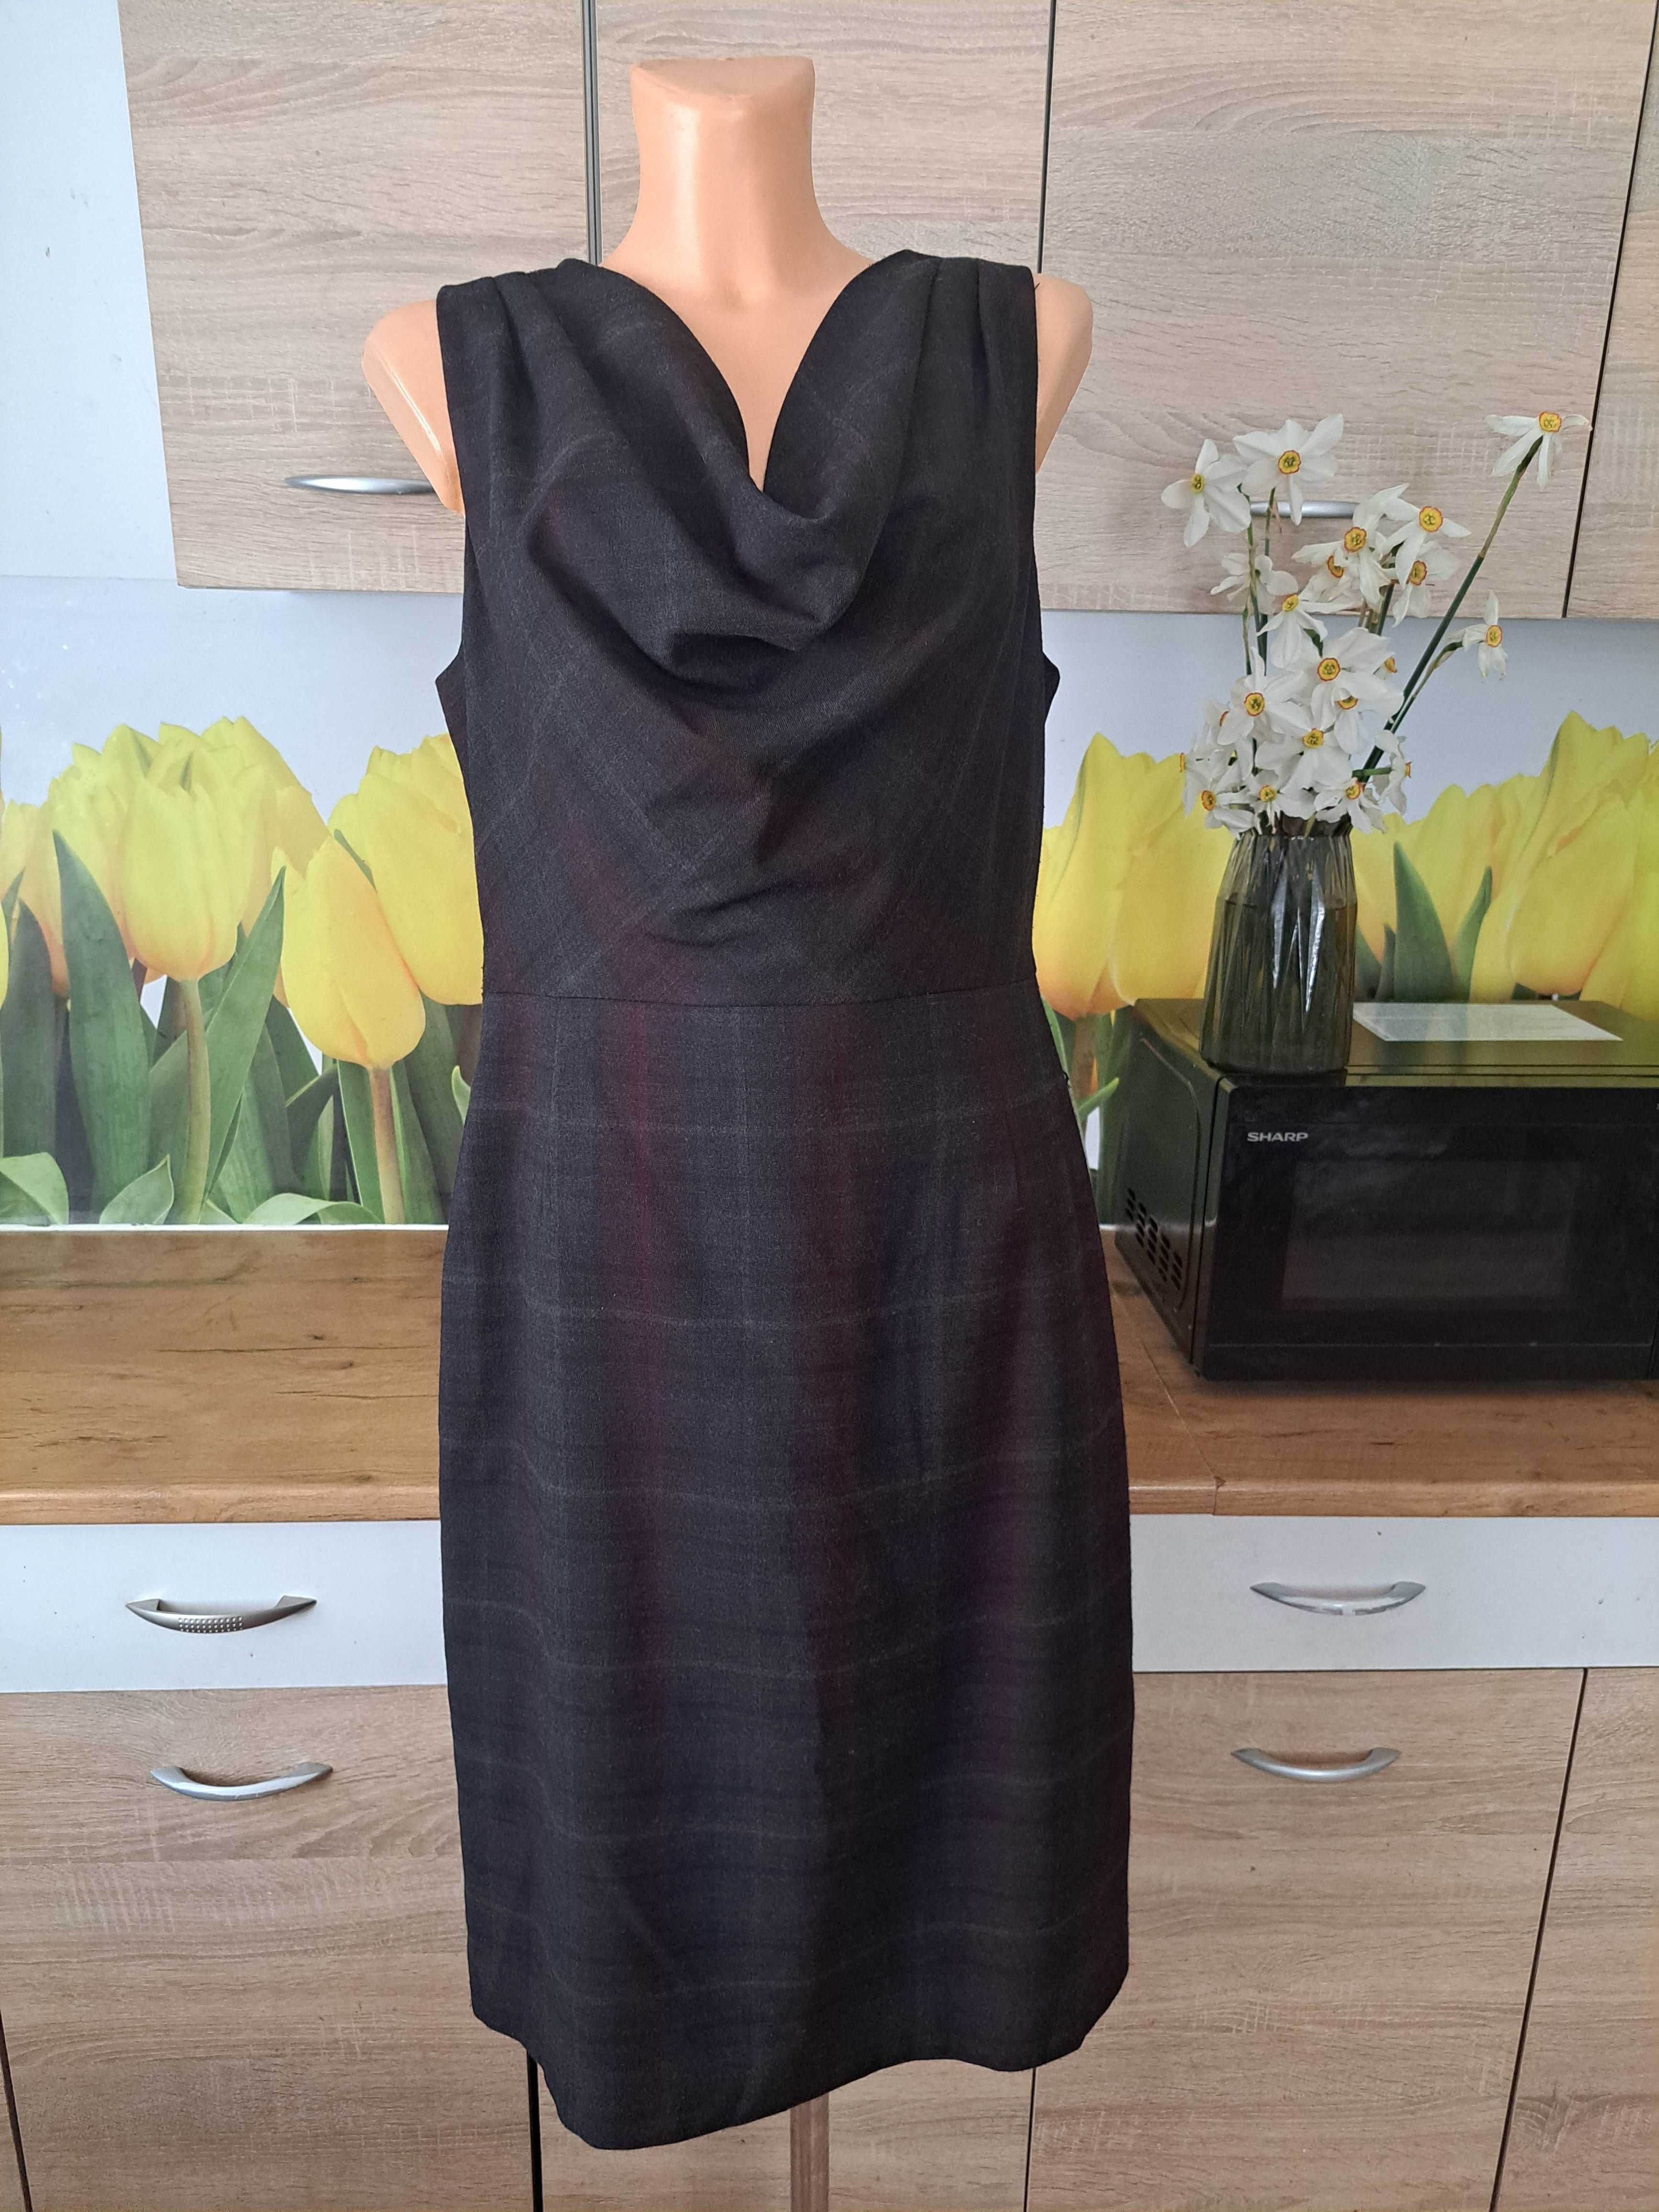 Biurowa sukienka F&F rozmiar 44 poliester/wiskoza, delikatna kratka